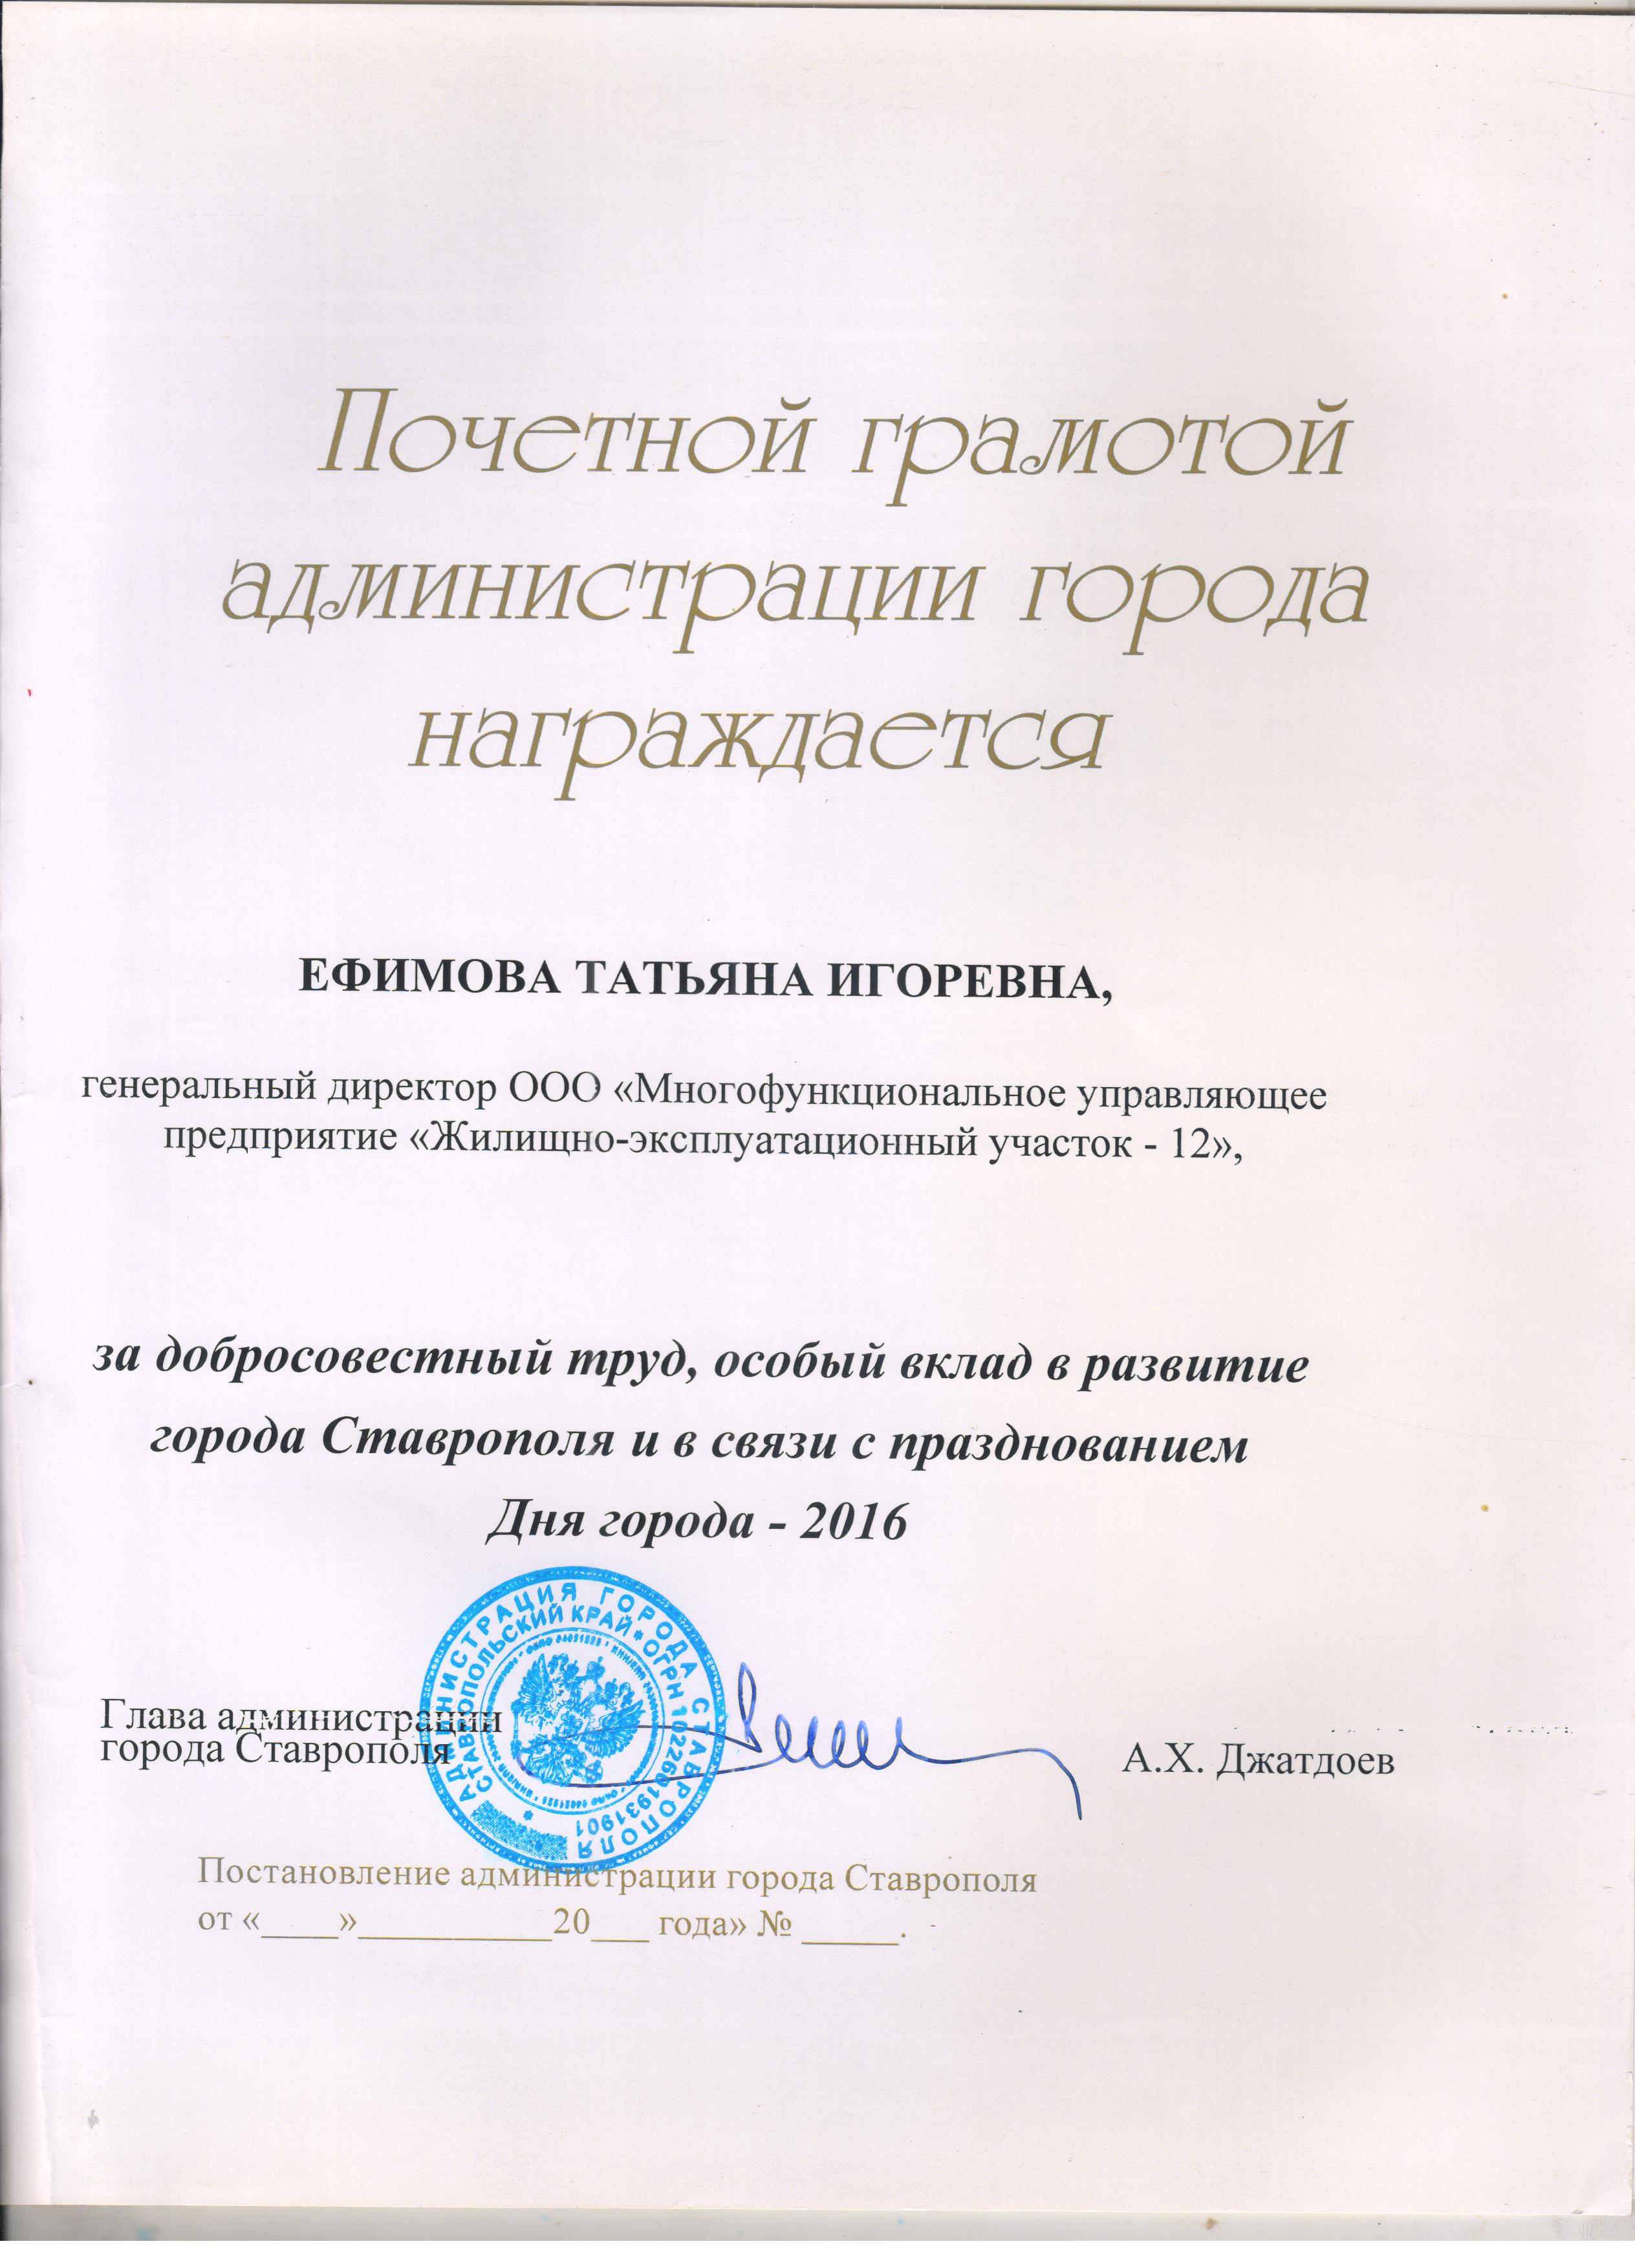 Почетная грамота администрации города Ставрополя